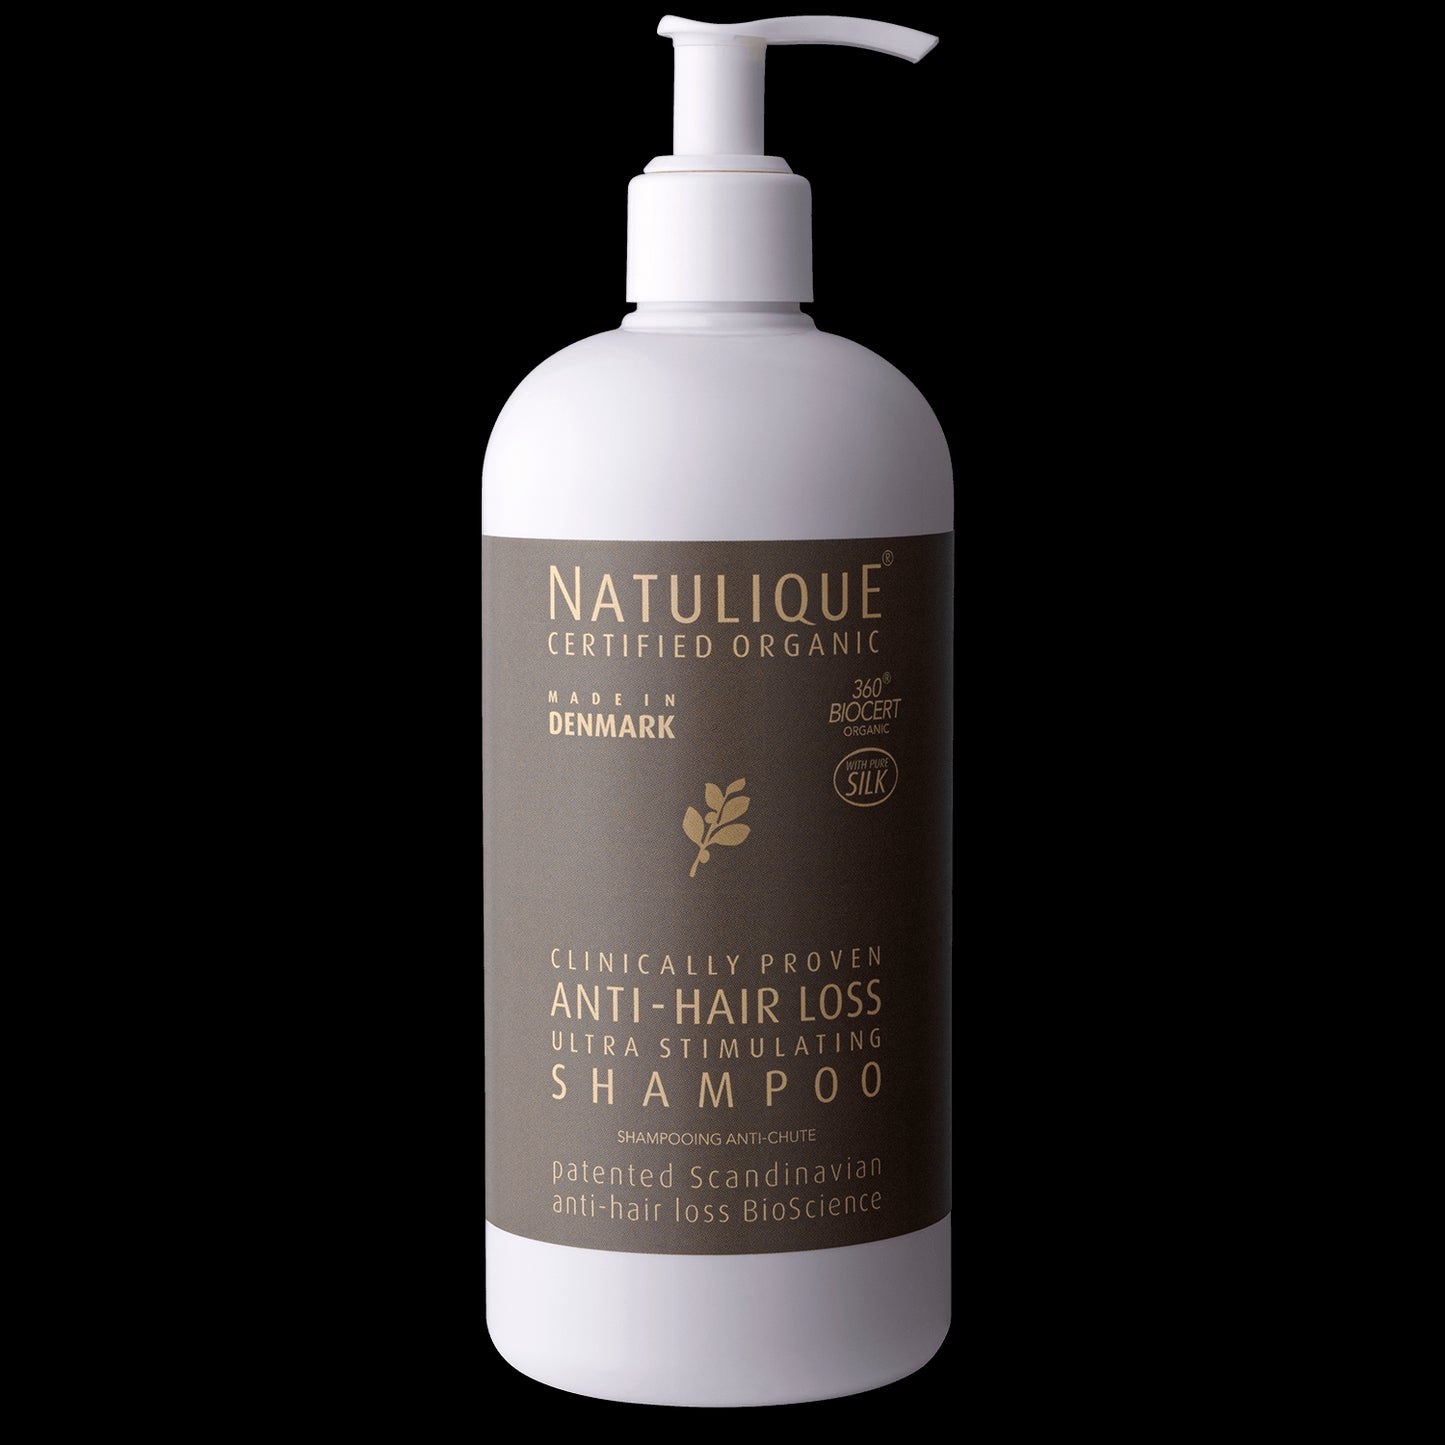 Natulique Anti-Hair Loss Shampoo